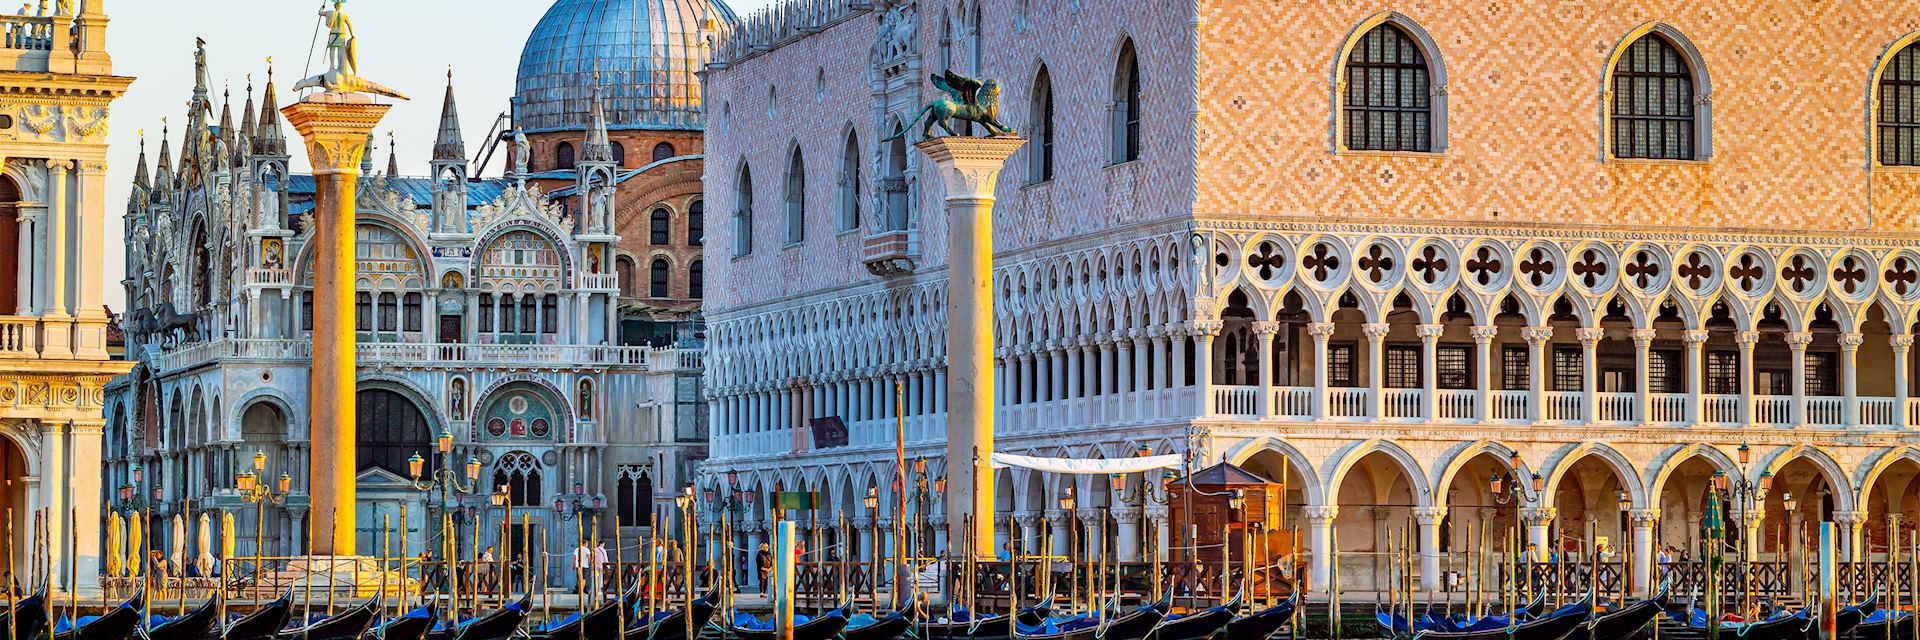 St Mark’s Square, Venice